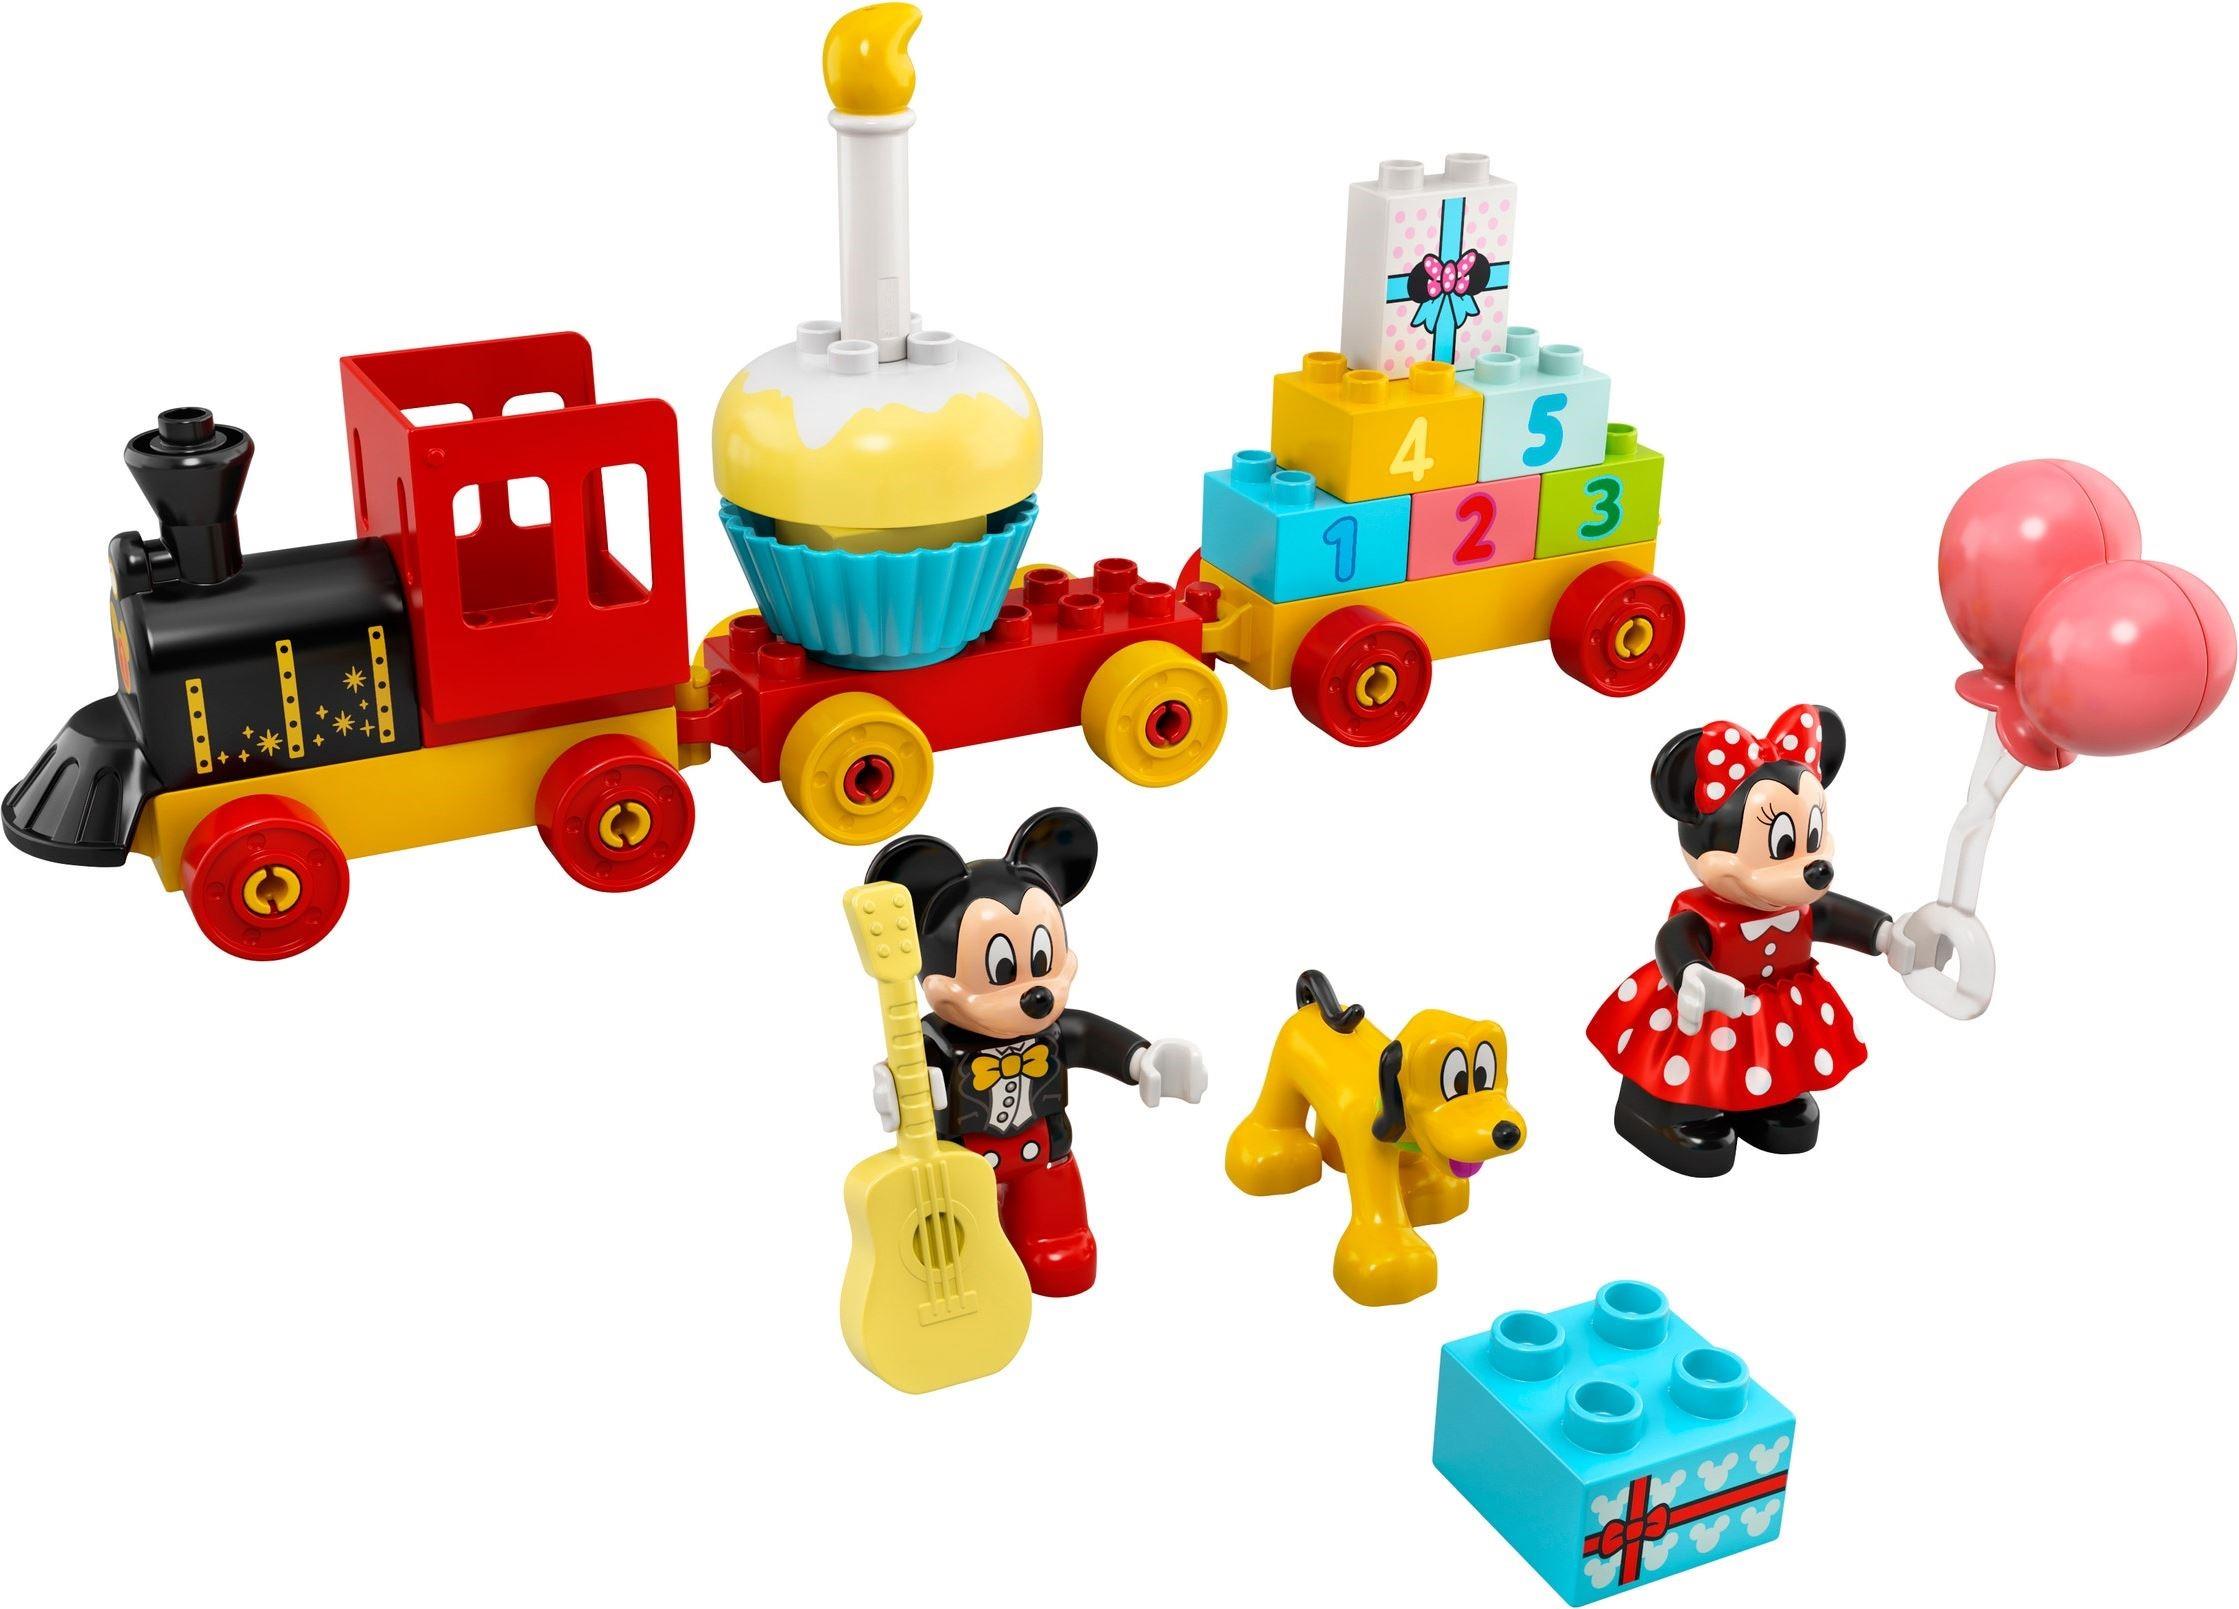 10941 Duplo Disney Mickey & Minnie Train